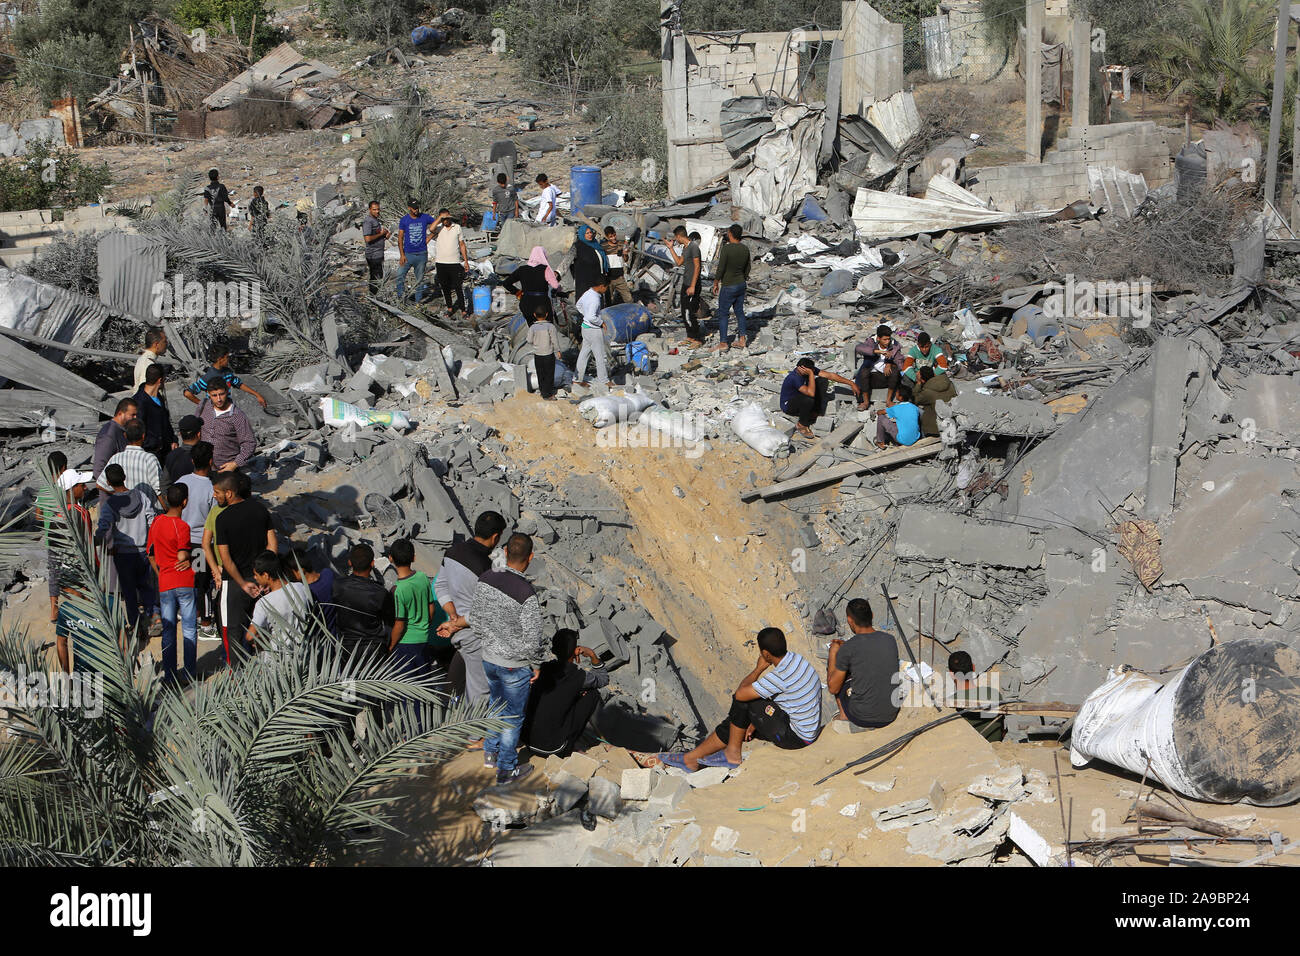 Palestinesi verificare la distruzione a seguito di un attacco aereo israeliano nel sud della striscia di Gaza, il Nov 14, 2019. Foto di Abed Rahim Khatib Foto Stock